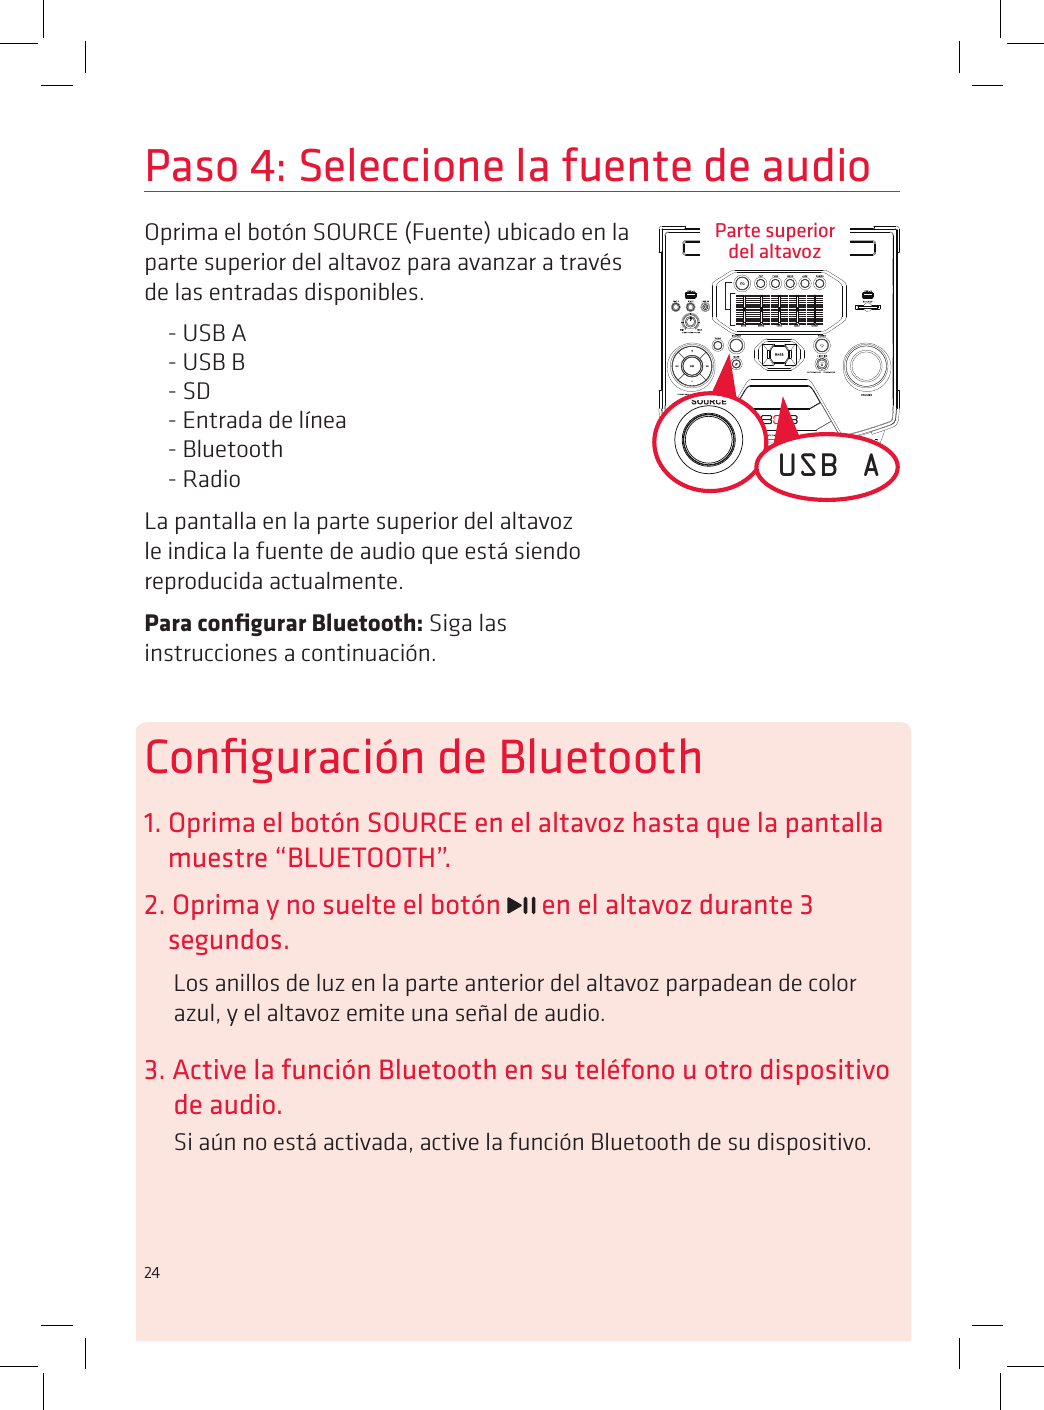 24Paso 4: Seleccione la fuente de audioOprima el botón SOURCE (Fuente) ubicado en la parte superior del altavoz para avanzar a través de las entradas disponibles.- USB A- USB B- SD- Entrada de línea- Bluetooth- RadioLa pantalla en la parte superior del altavoz le indica la fuente de audio que está siendo reproducida actualmente. Para conﬁgurar Bluetooth: Siga las instrucciones a continuación.USB AConﬁguración de Bluetooth1. Oprima el botón SOURCE en el altavoz hasta que la pantalla muestre “BLUETOOTH”.2. Oprima y no suelte el botón   en el altavoz durante 3 segundos.Los anillos de luz en la parte anterior del altavoz parpadean de color azul, y el altavoz emite una señal de audio.3. Active la función Bluetooth en su teléfono u otro dispositivo de audio.Si aún no está activada, active la función Bluetooth de su dispositivo.Parte superior  del altavoz24